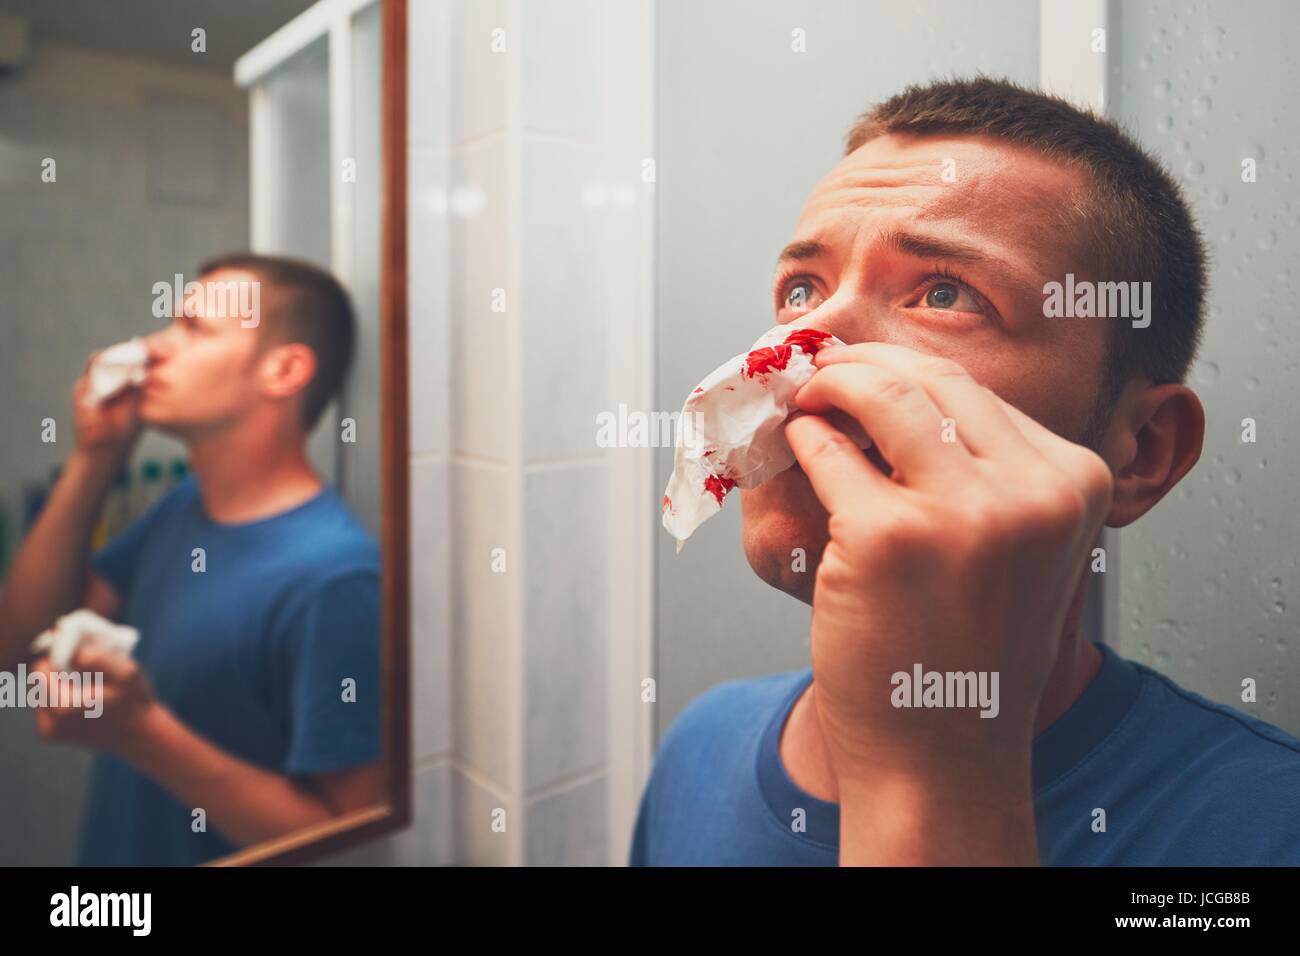 Mann mit Nasenbluten im Badezimmer. Für Themen wie Krankheit, Unfall oder Gewalt. Stockfoto